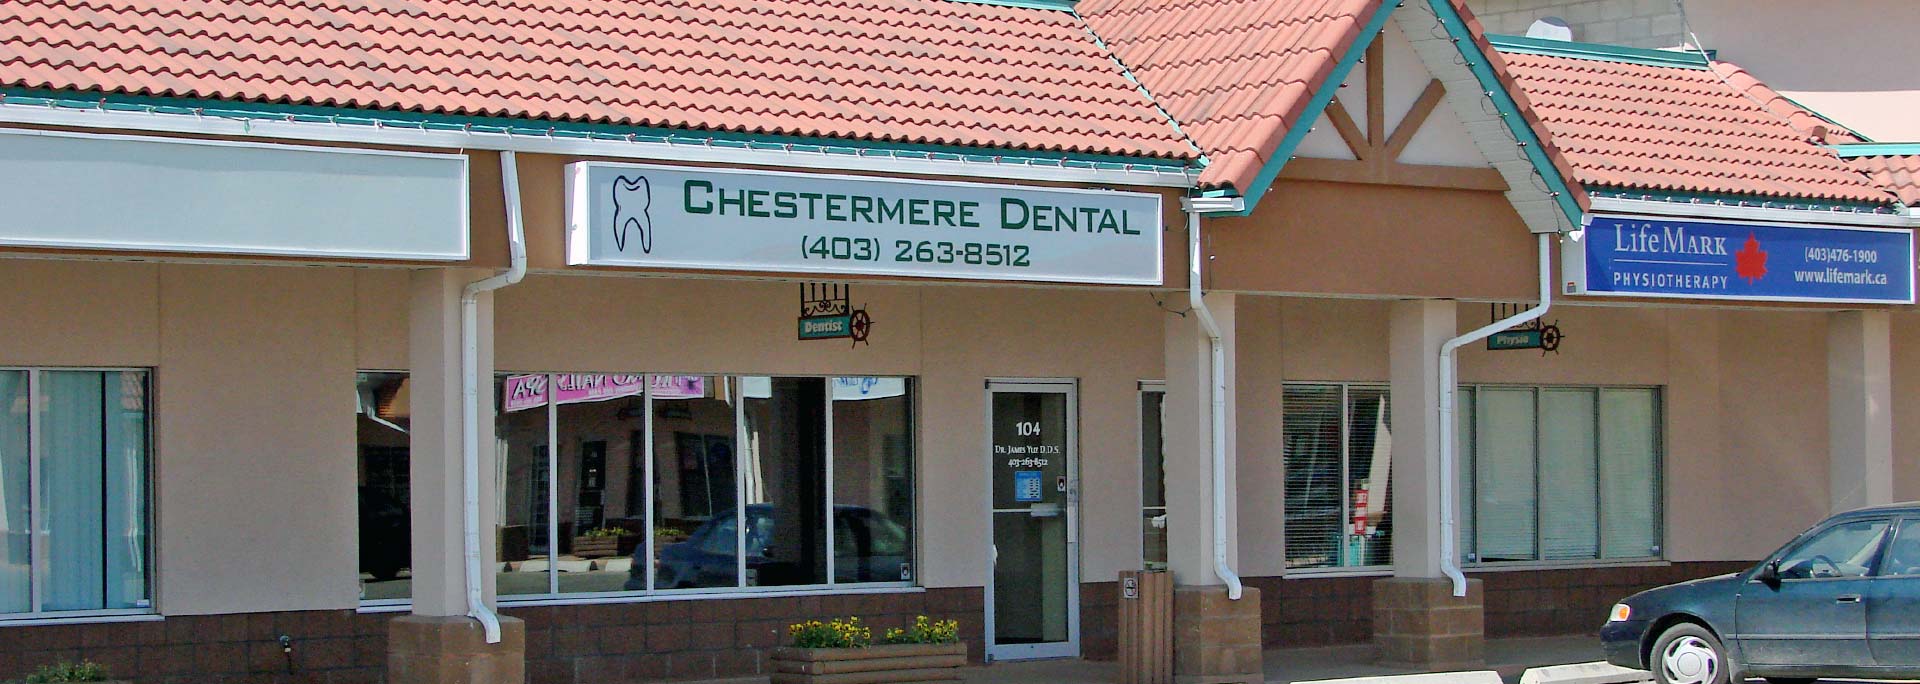 Chestermere Dental Care Exterior